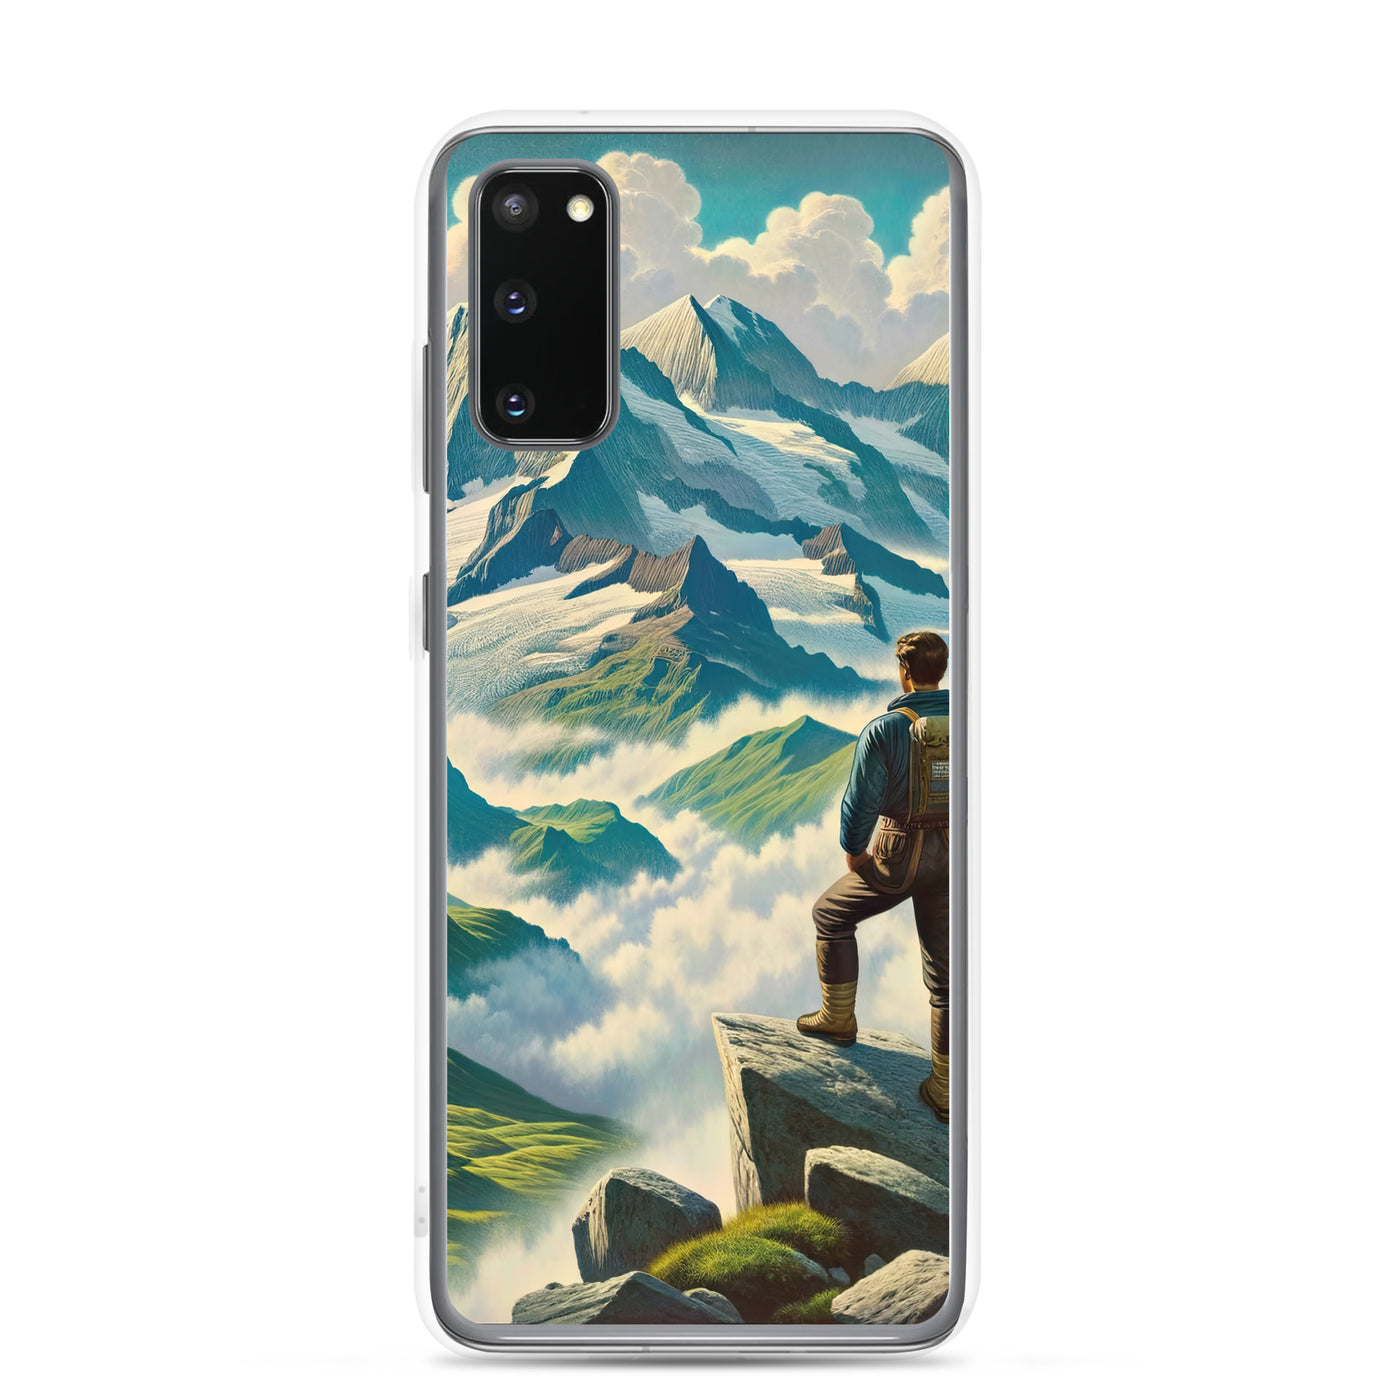 Panoramablick der Alpen mit Wanderer auf einem Hügel und schroffen Gipfeln - Samsung Schutzhülle (durchsichtig) wandern xxx yyy zzz Samsung Galaxy S20